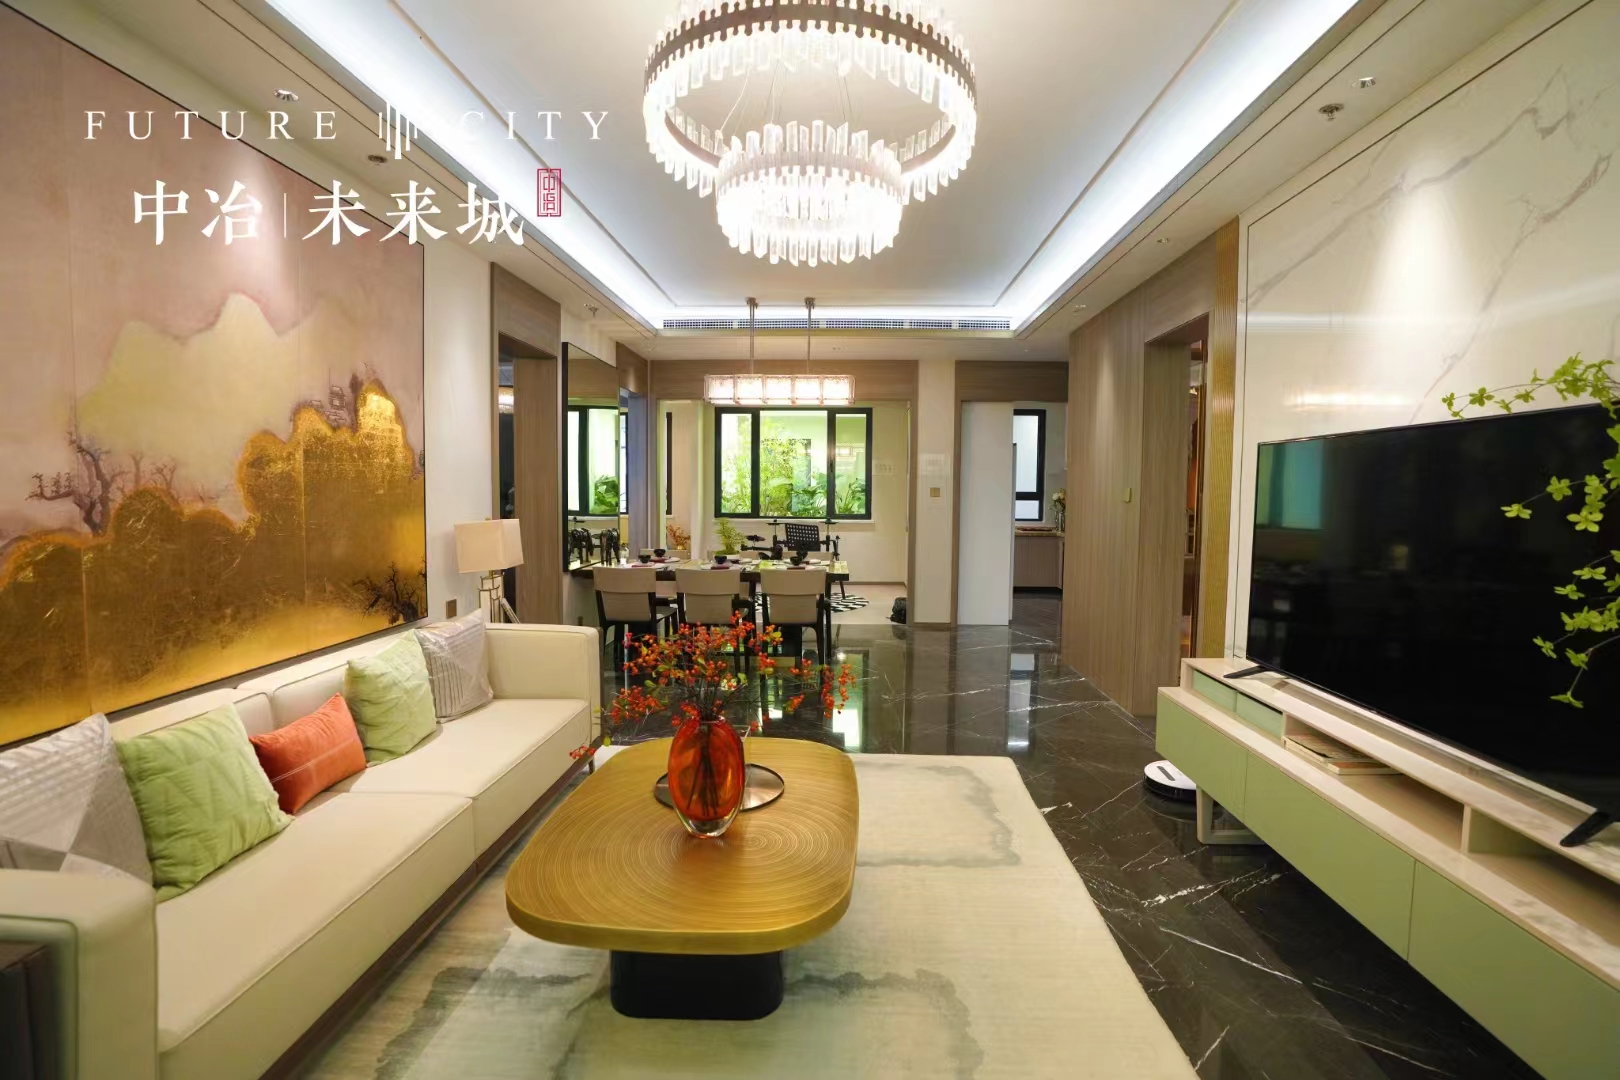 滨江郦城项目目前的房价是7900元/平米